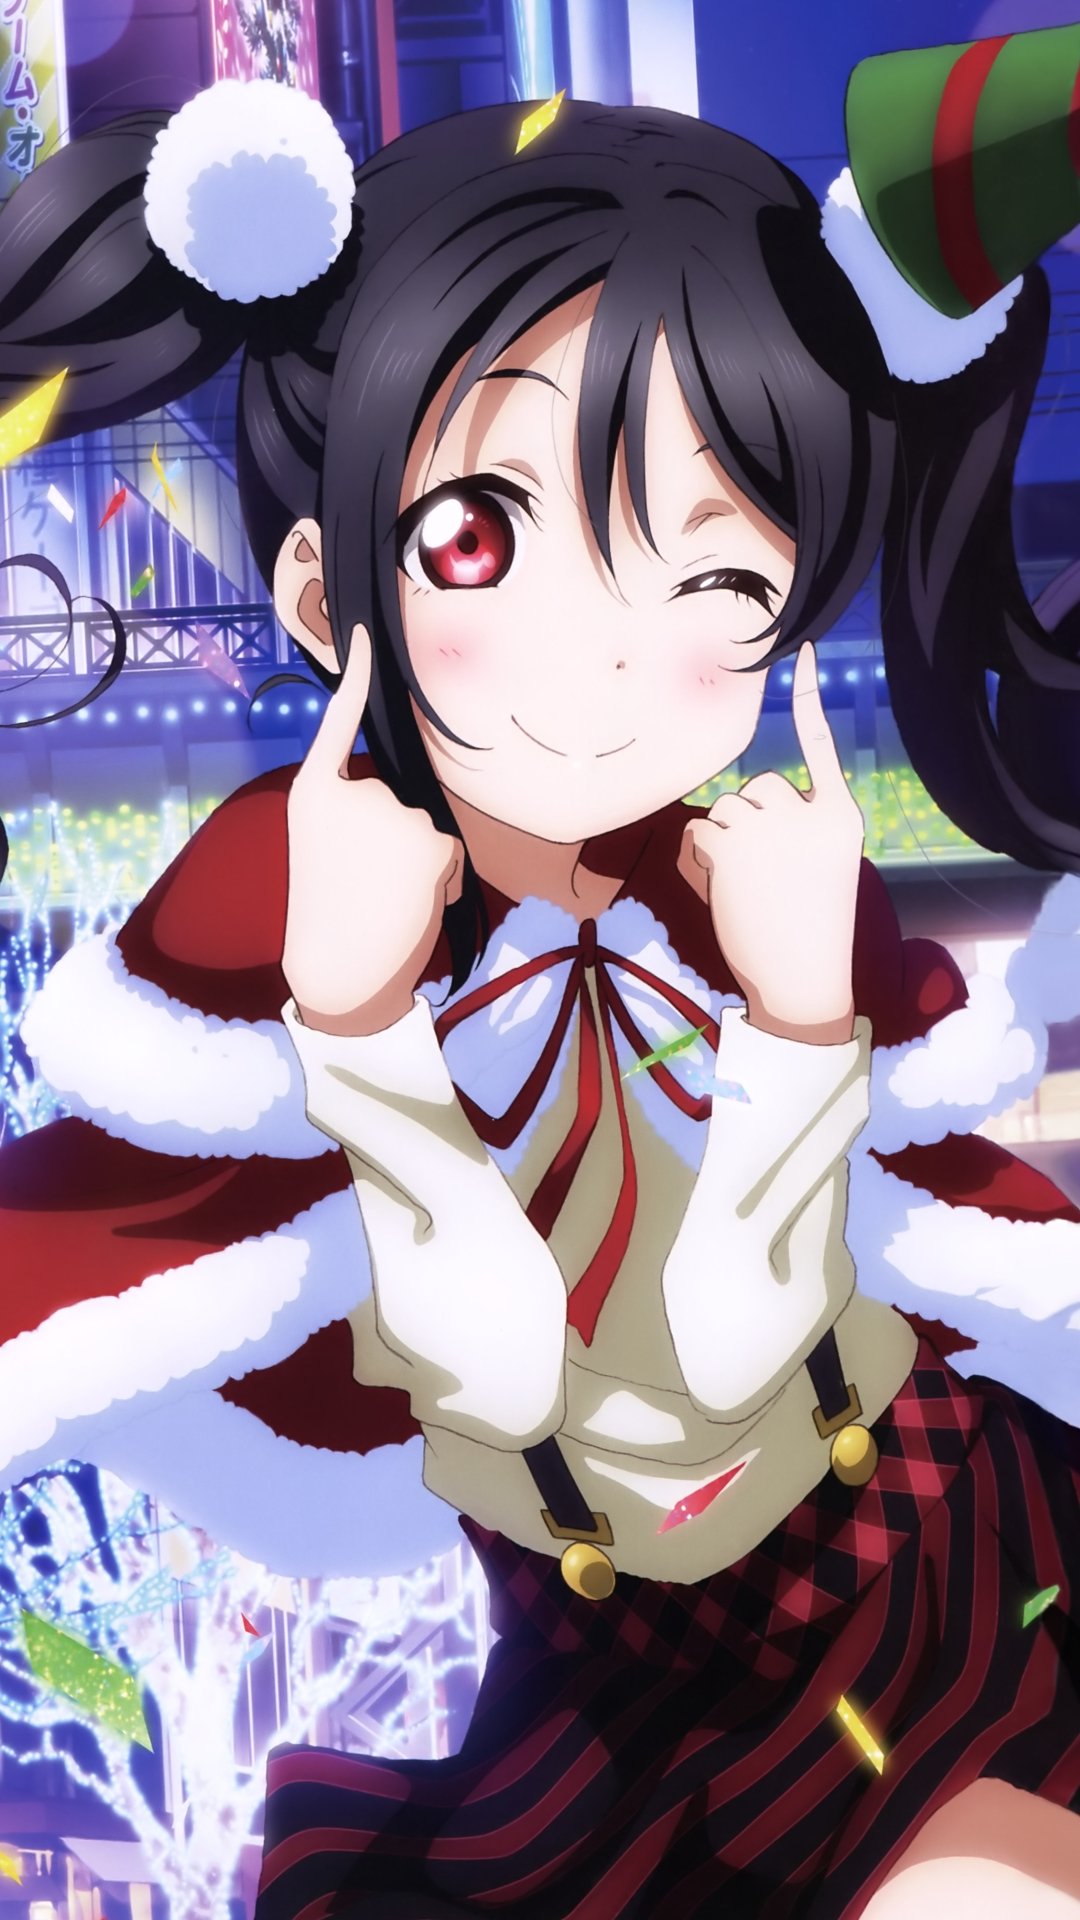 Christmas Anime 2017 Love Live - Merry Christmas Anime 2017 , HD Wallpaper & Backgrounds